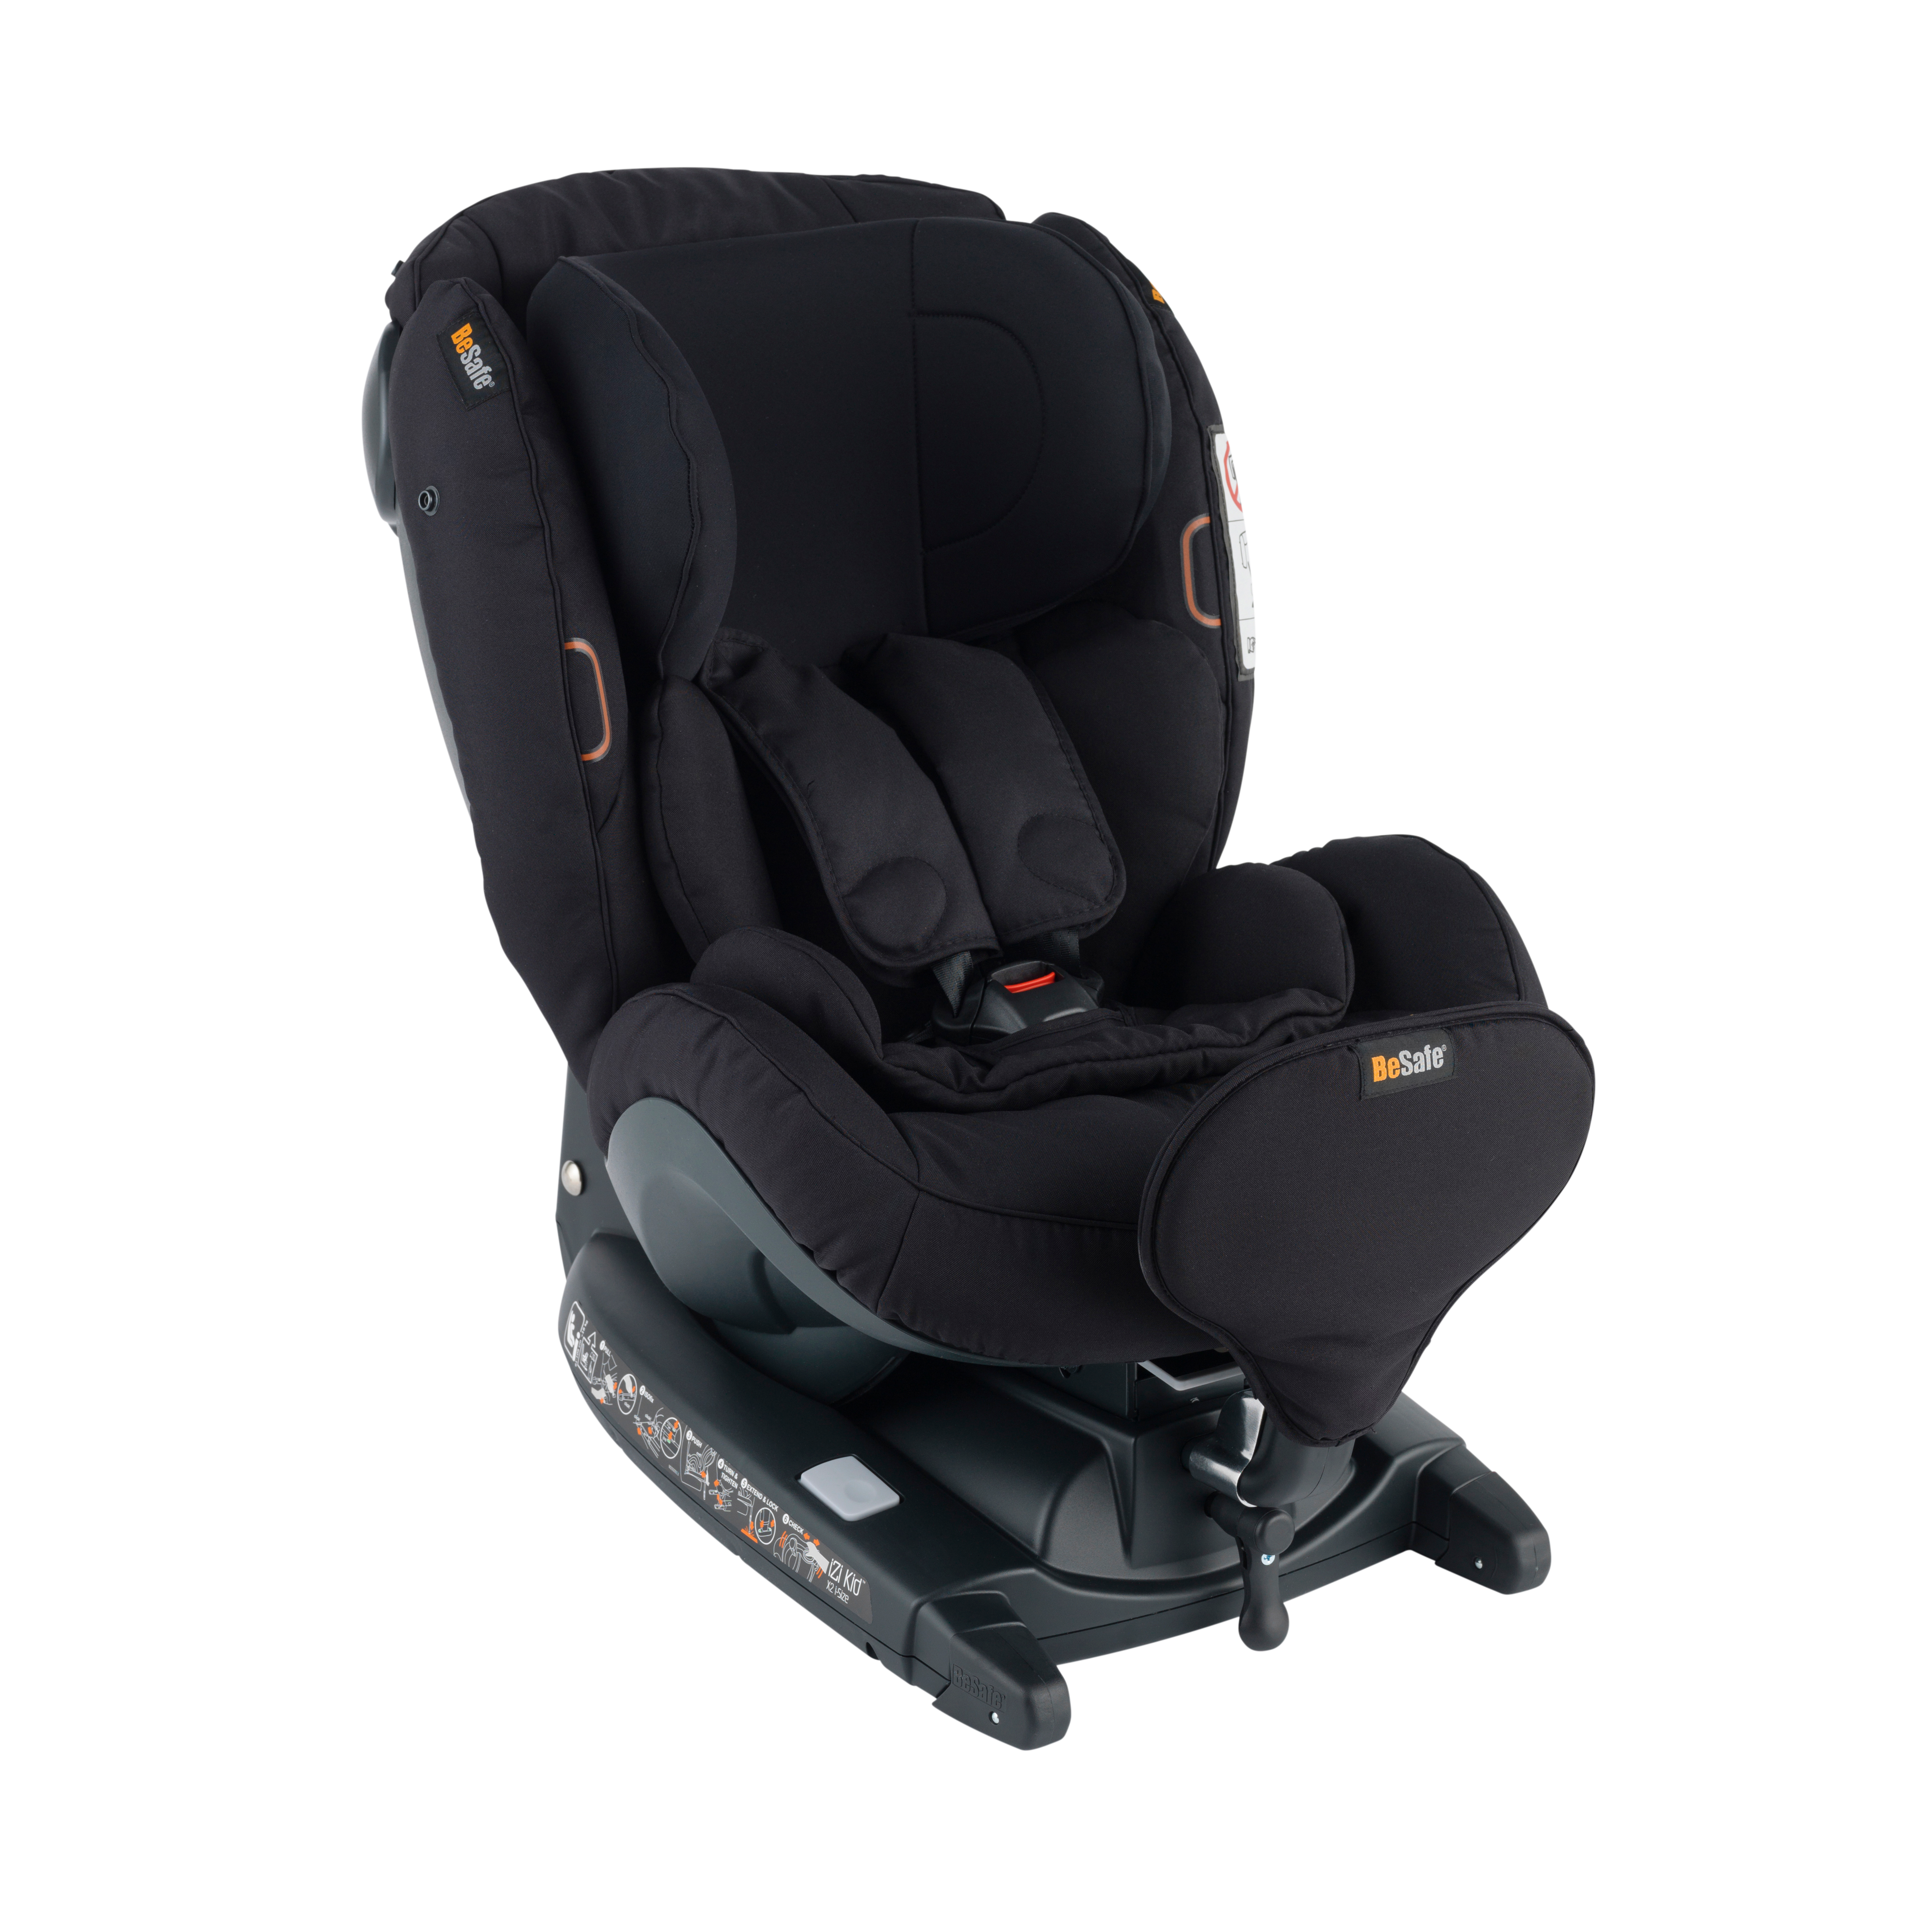 The purely rear facing child car seat, BeSafe iZi Kid X3 i-Size